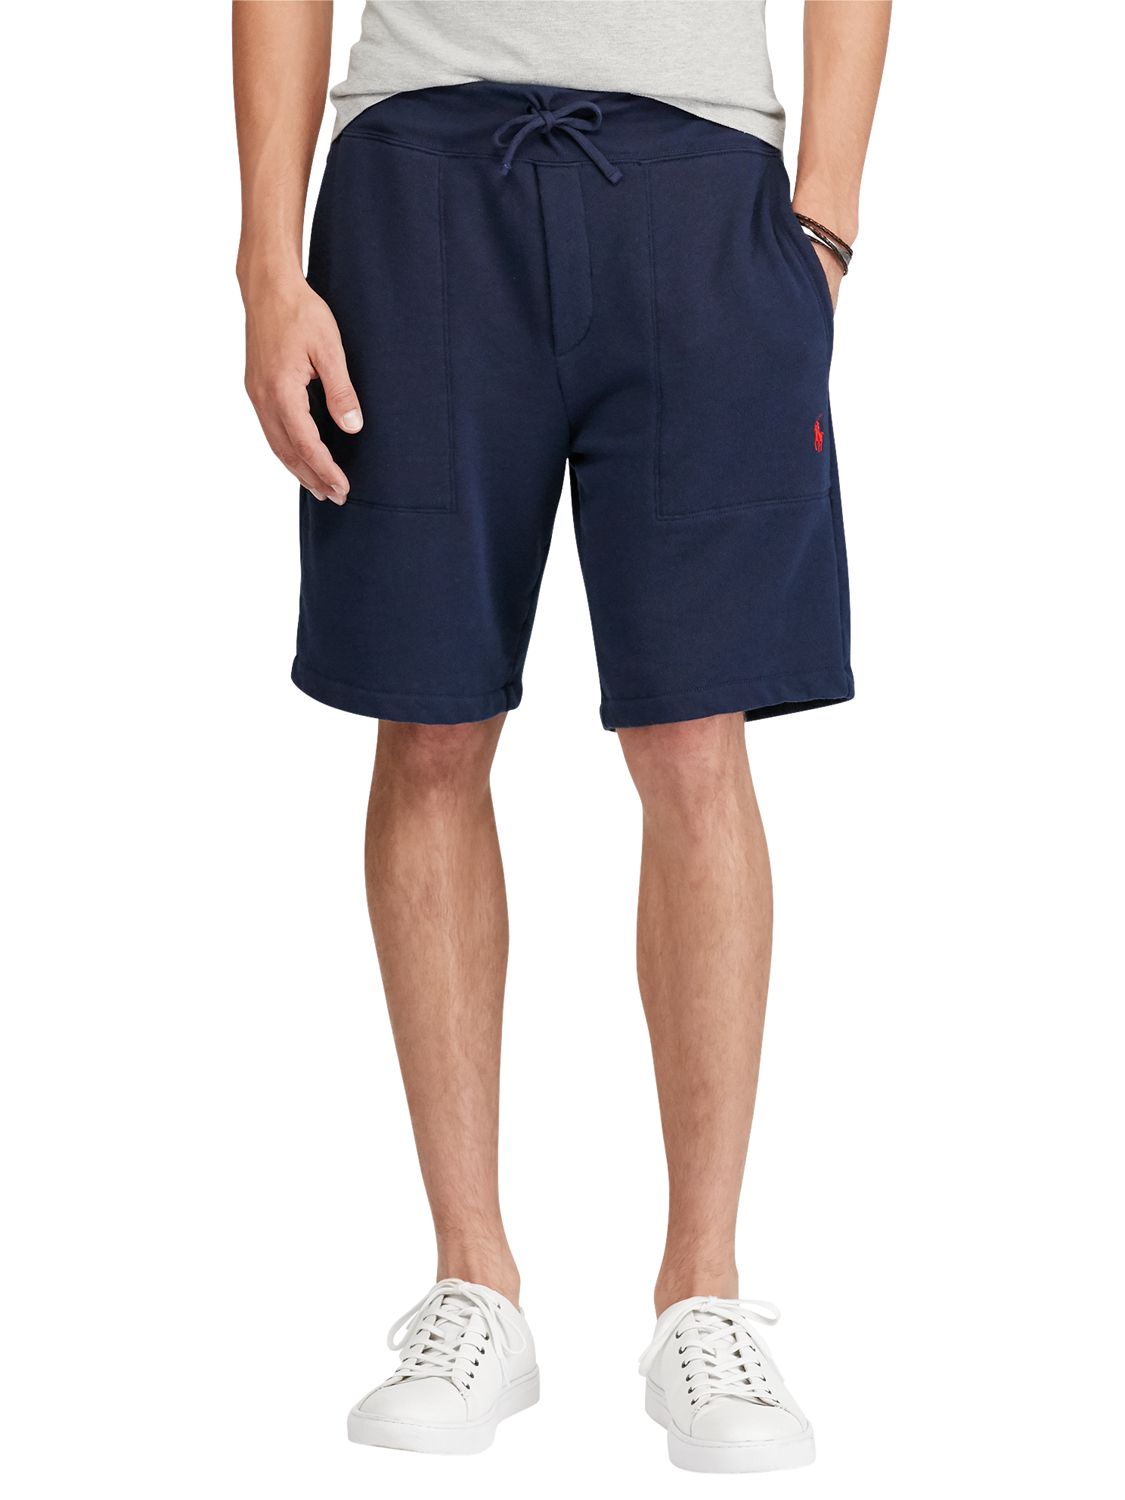 polo jersey shorts